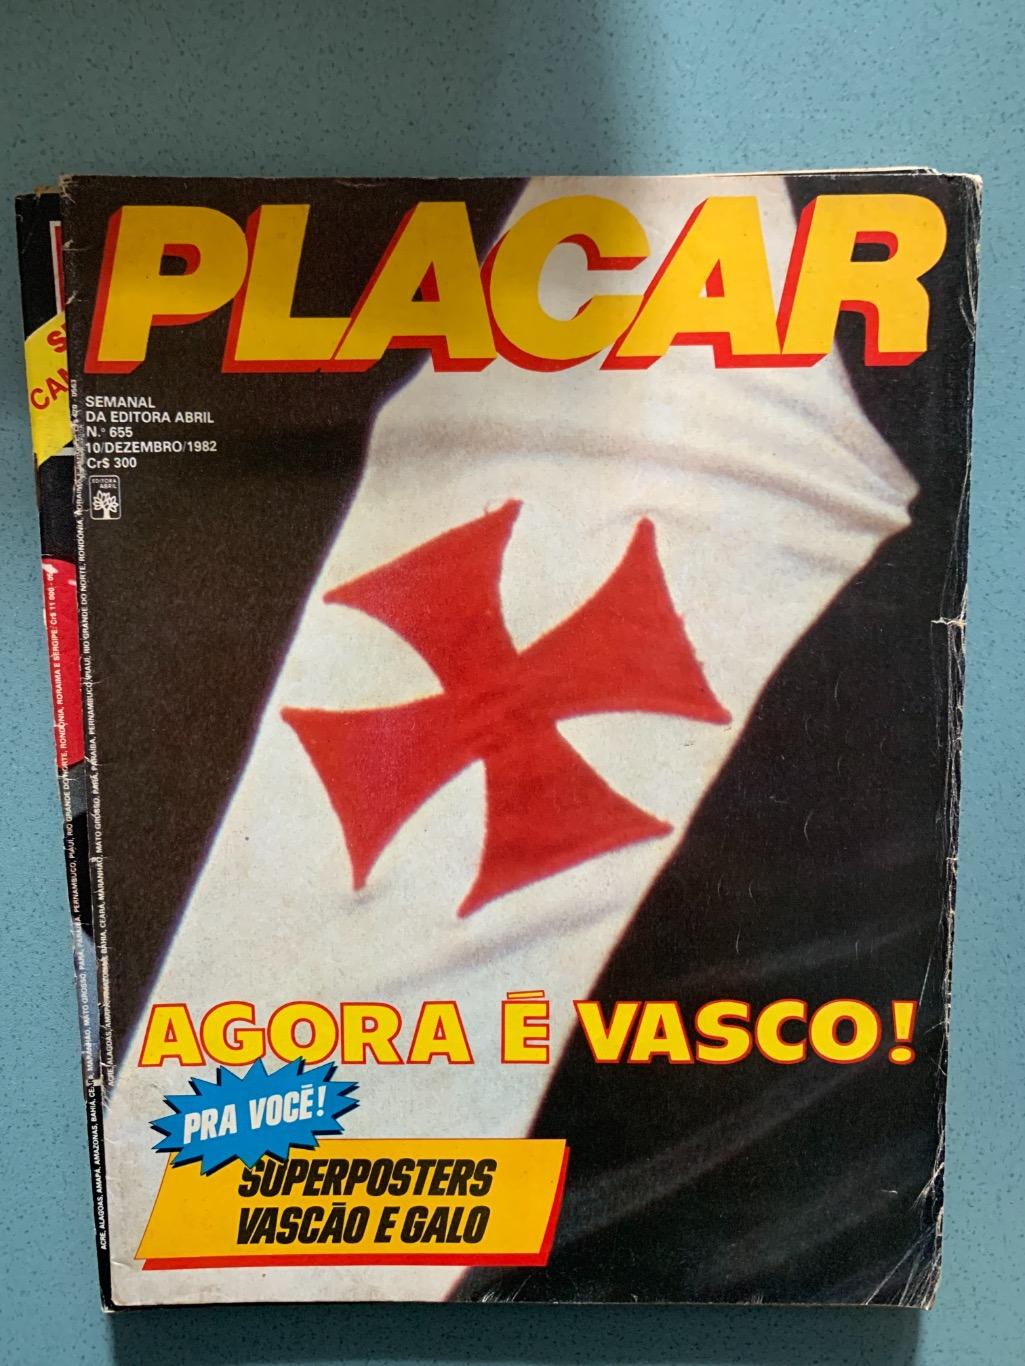 Placar 2 Бразилия на выбор 1